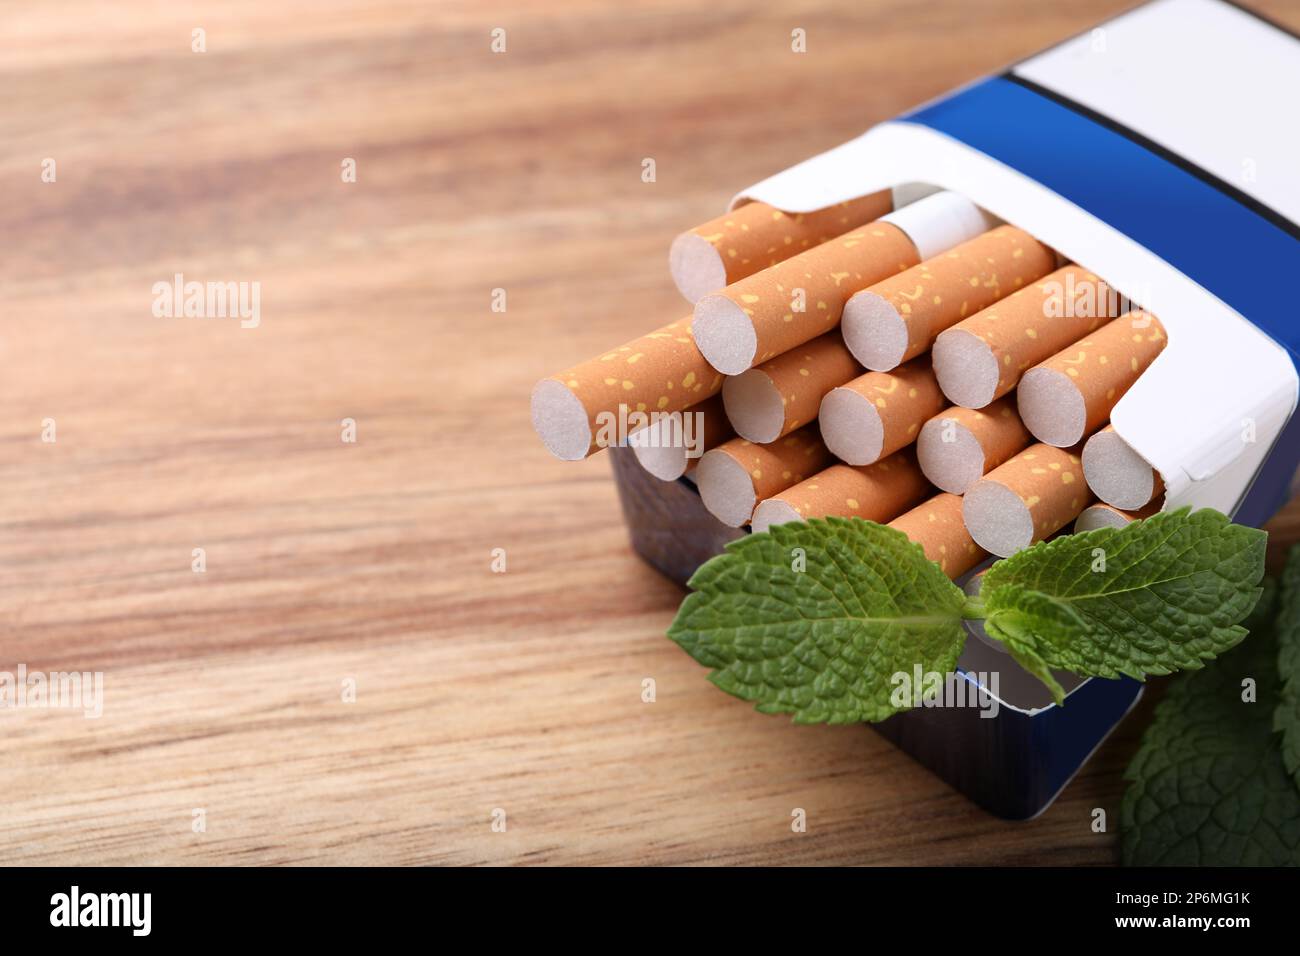 Paquet de cigarettes de menthol et de feuilles de menthe sur table en bois, gros plan. Espace pour le texte Banque D'Images